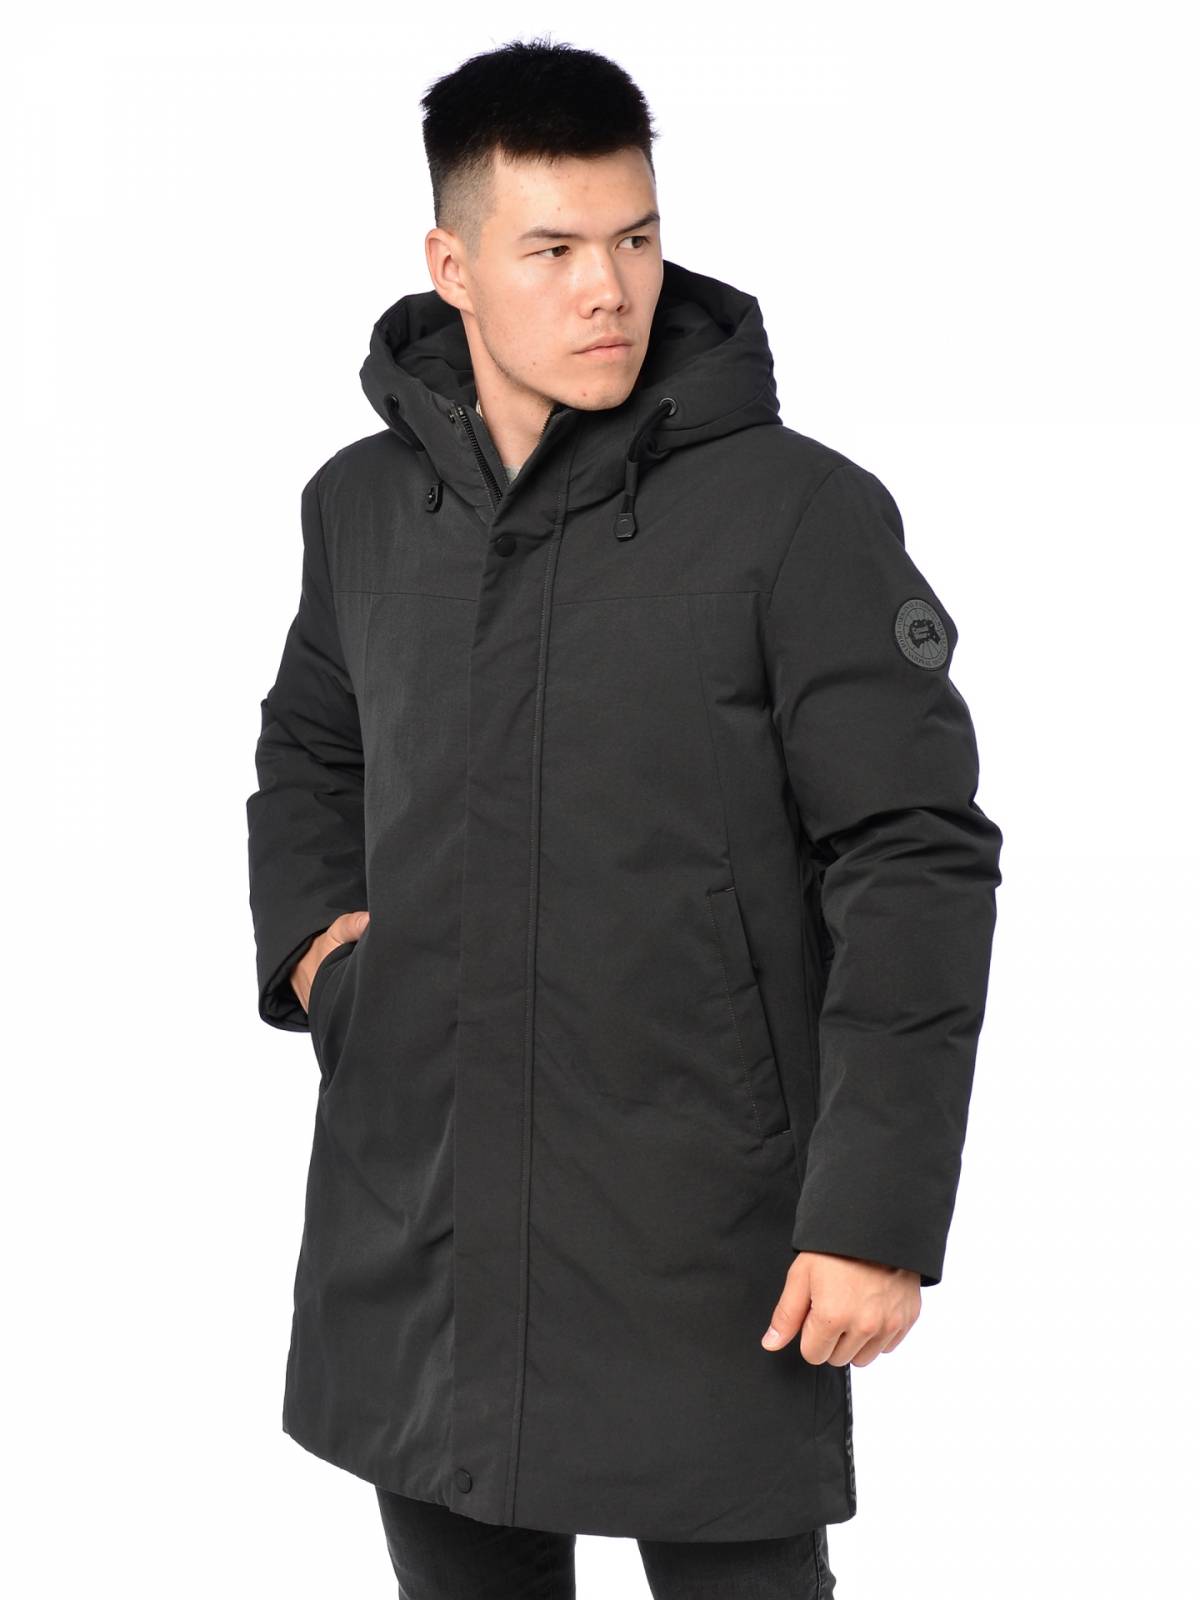 Зимняя куртка мужская Kasadun 3878 серая 52 RU